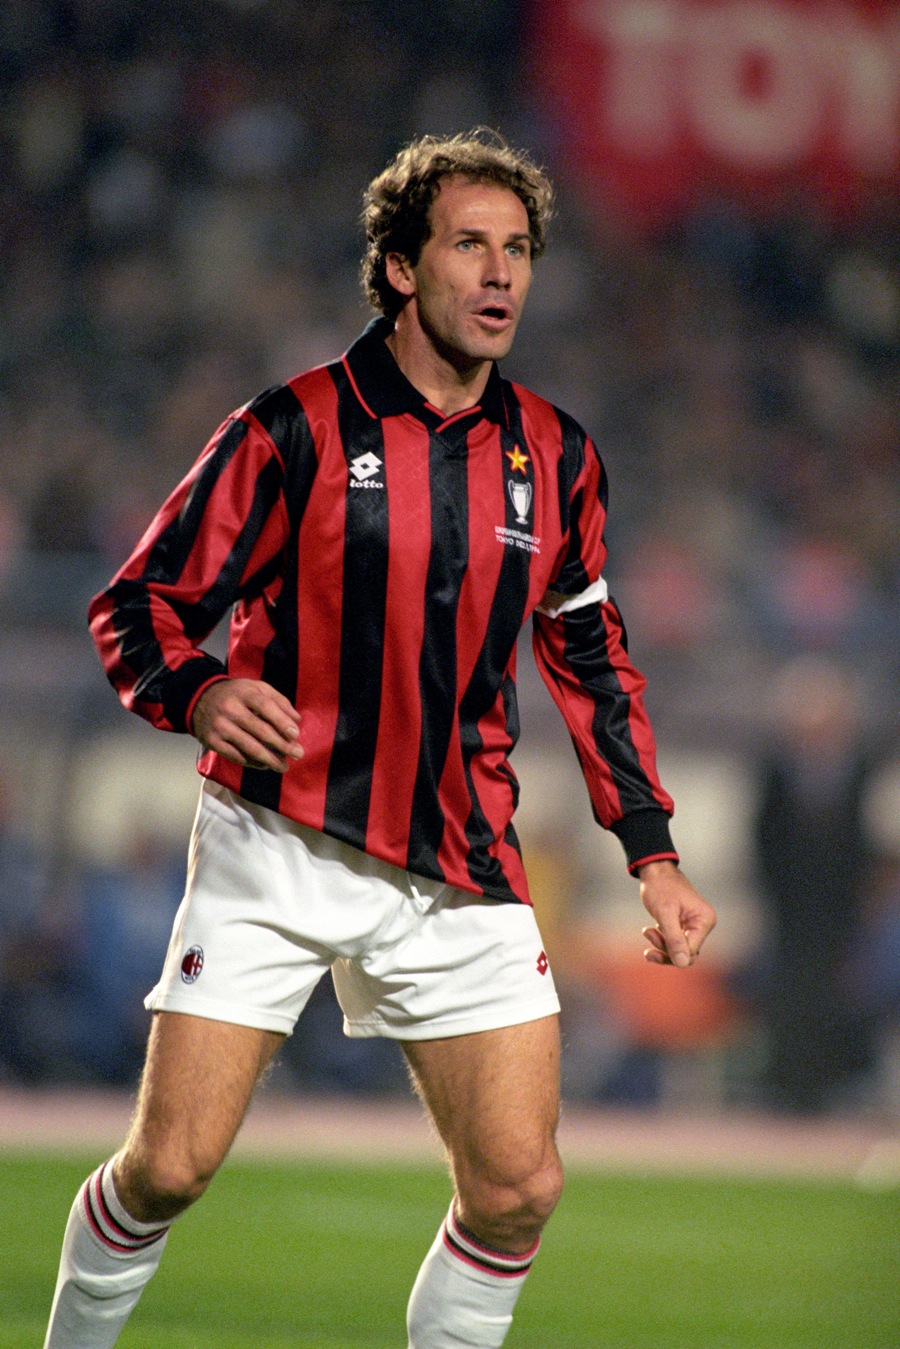 فرانکو بارسی - حضور در میلان: 1997-1977 (719 بازی) - Franco Baresi